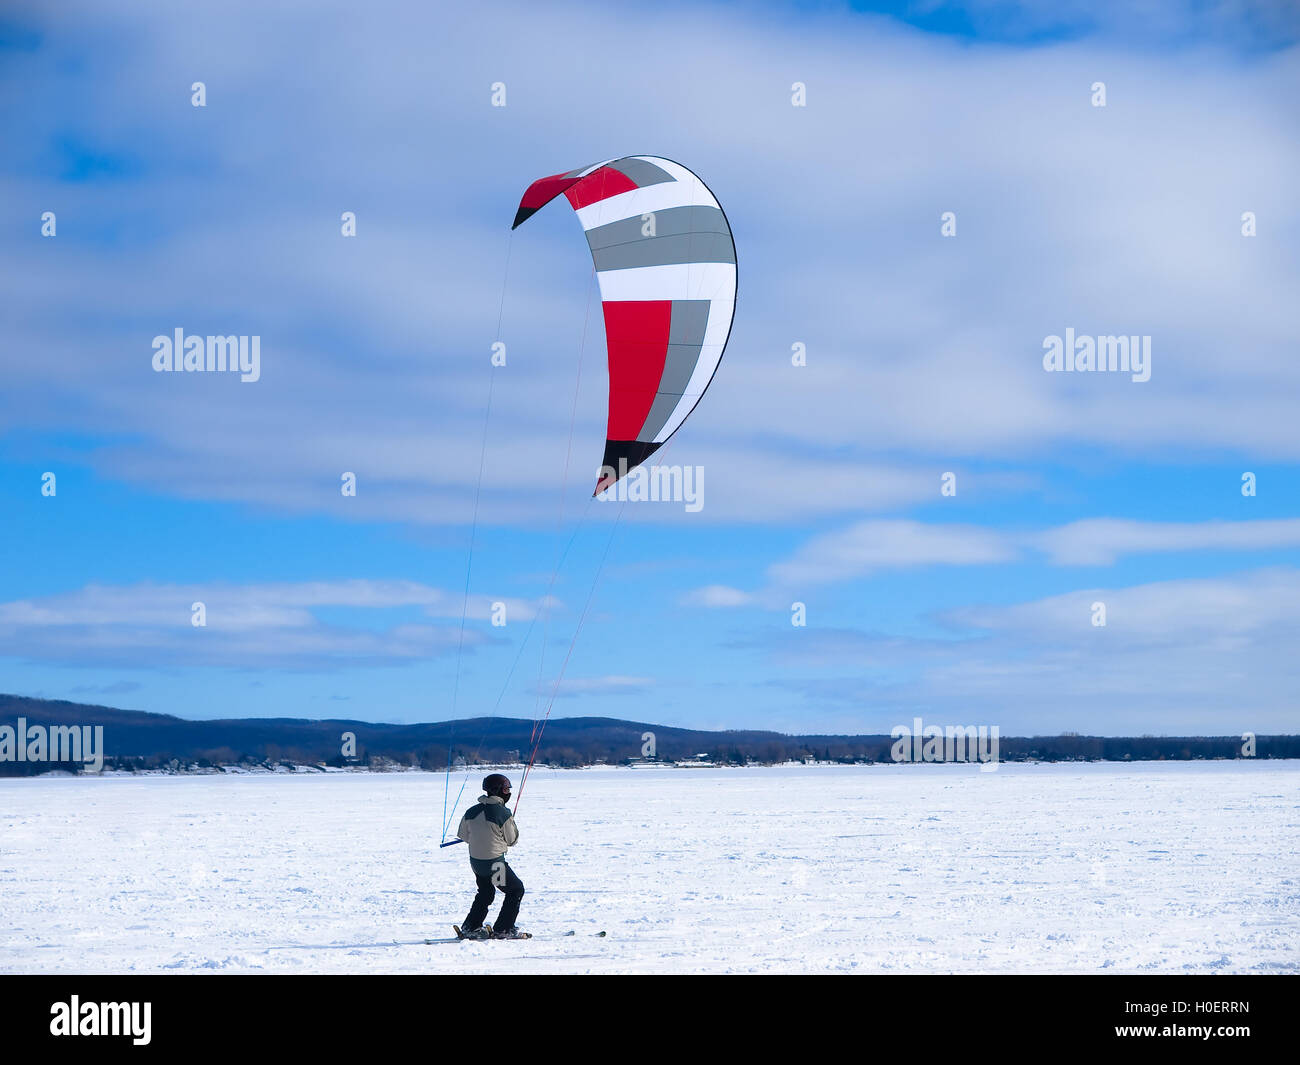 Los hombres ski kite sobre un lago congelado Foto de stock